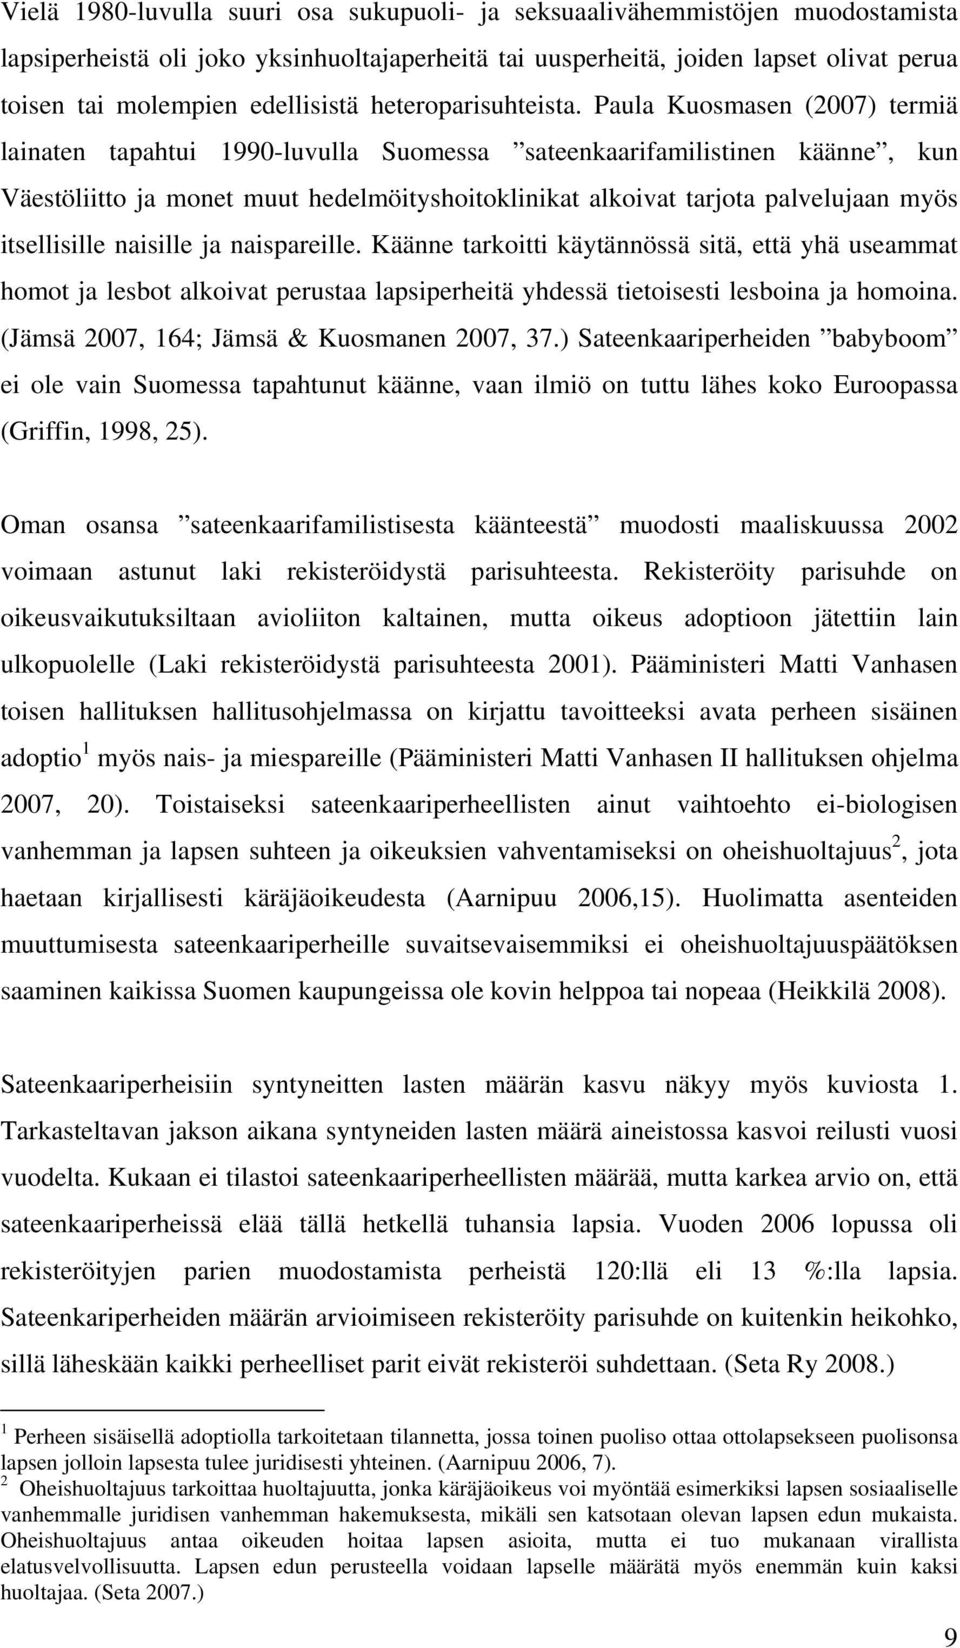 Paula Kuosmasen (2007) termiä lainaten tapahtui 1990-luvulla Suomessa sateenkaarifamilistinen käänne, kun Väestöliitto ja monet muut hedelmöityshoitoklinikat alkoivat tarjota palvelujaan myös